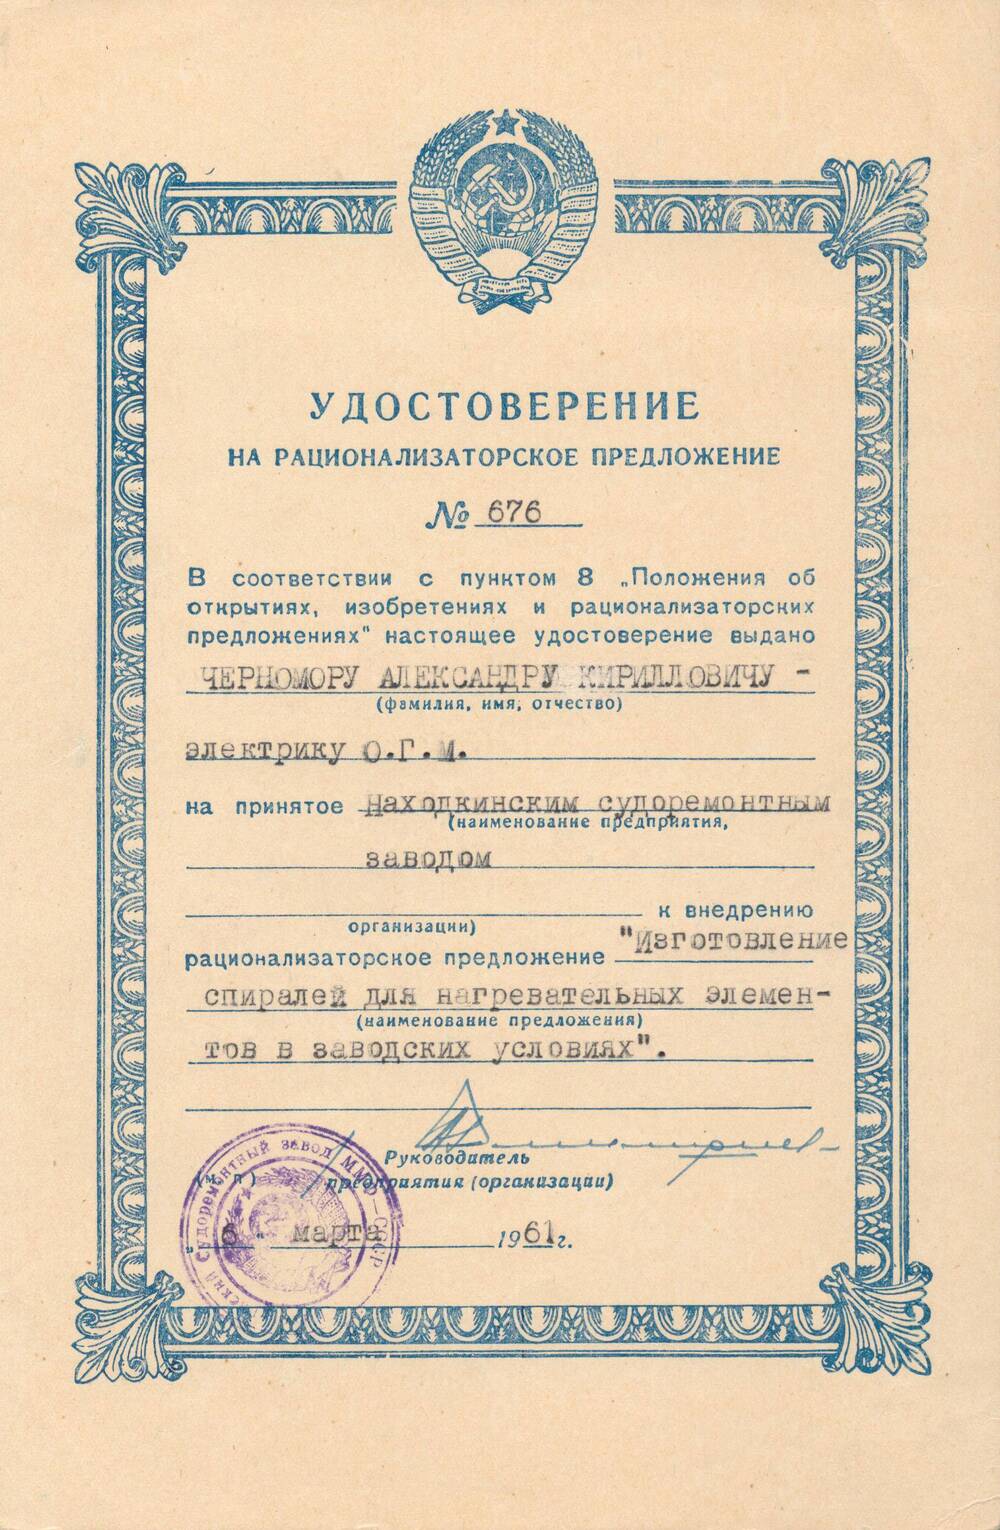 Удостоверение на рационализаторское предложение №676 Черномора Александра Кирилловича.